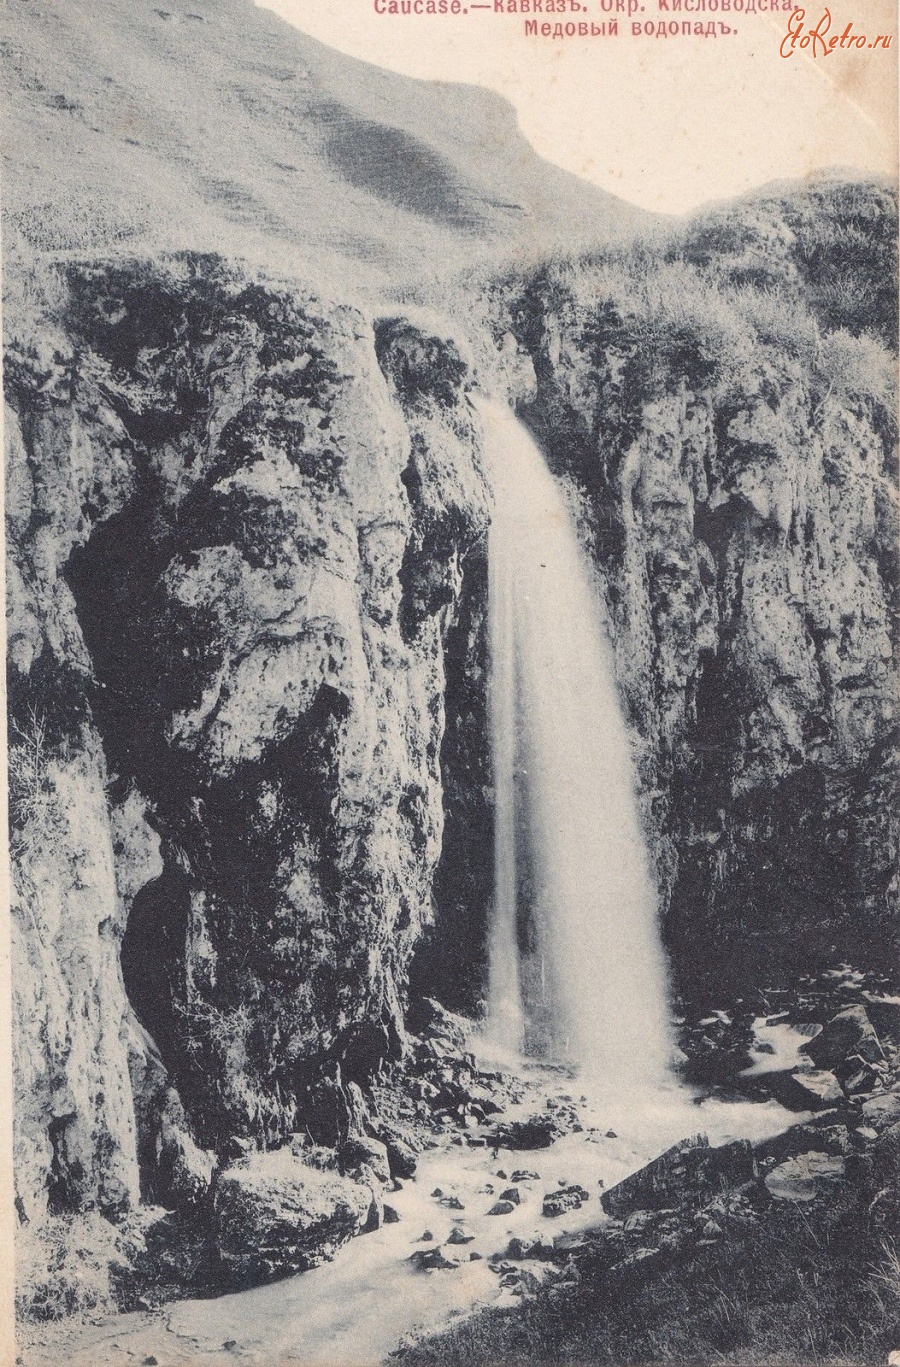 Кисловодск - Медовый водопад. Шерер, Набгольц и Ко